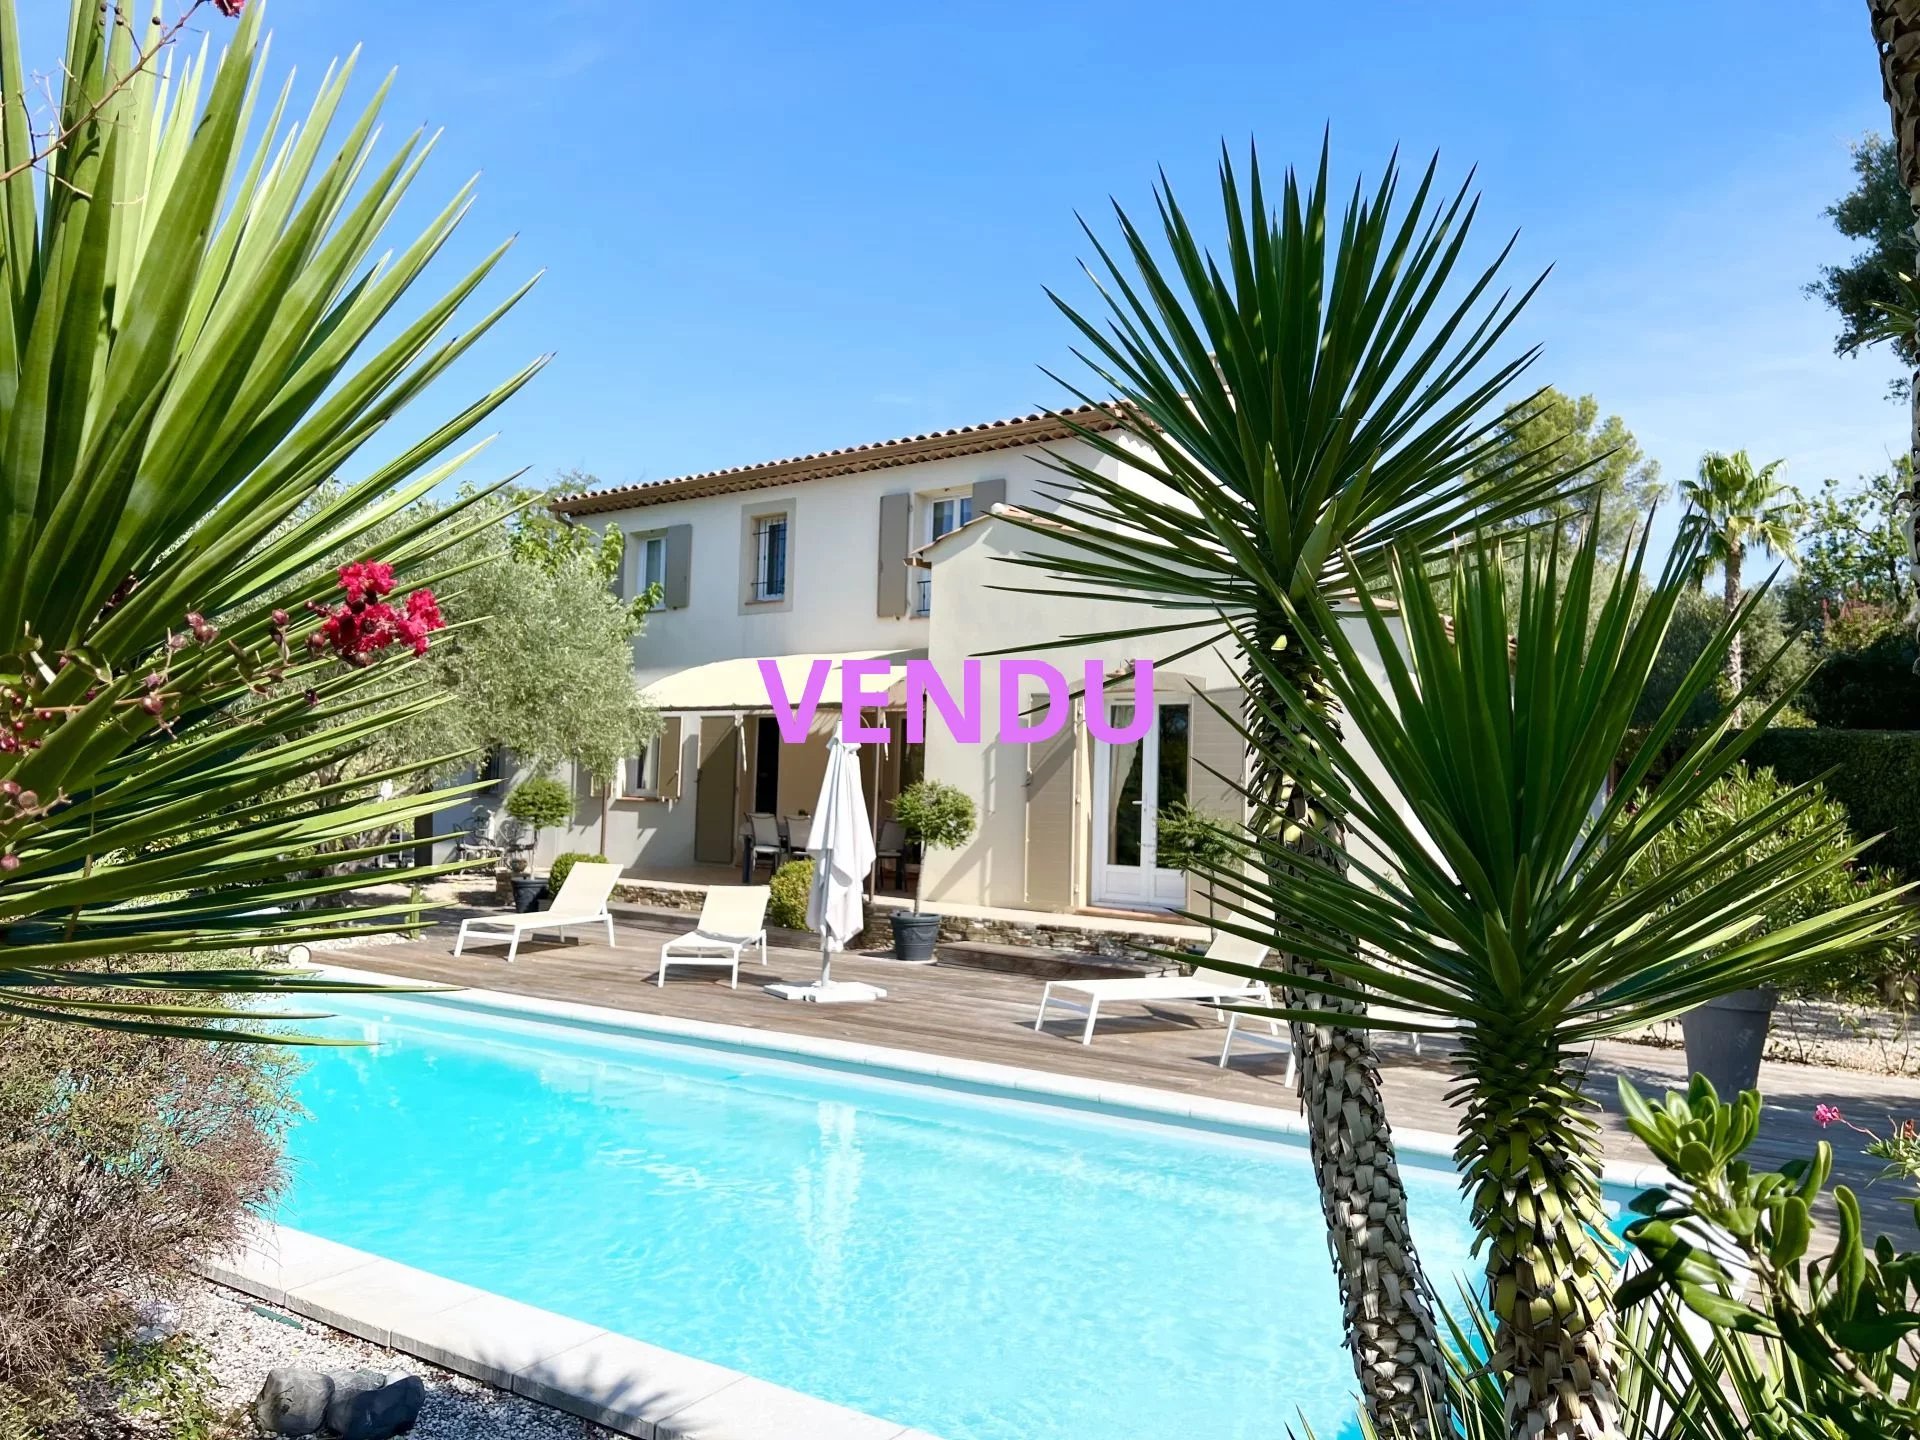 Magnifique bastide avec piscine et pool house sur 1 426 m² de terrain